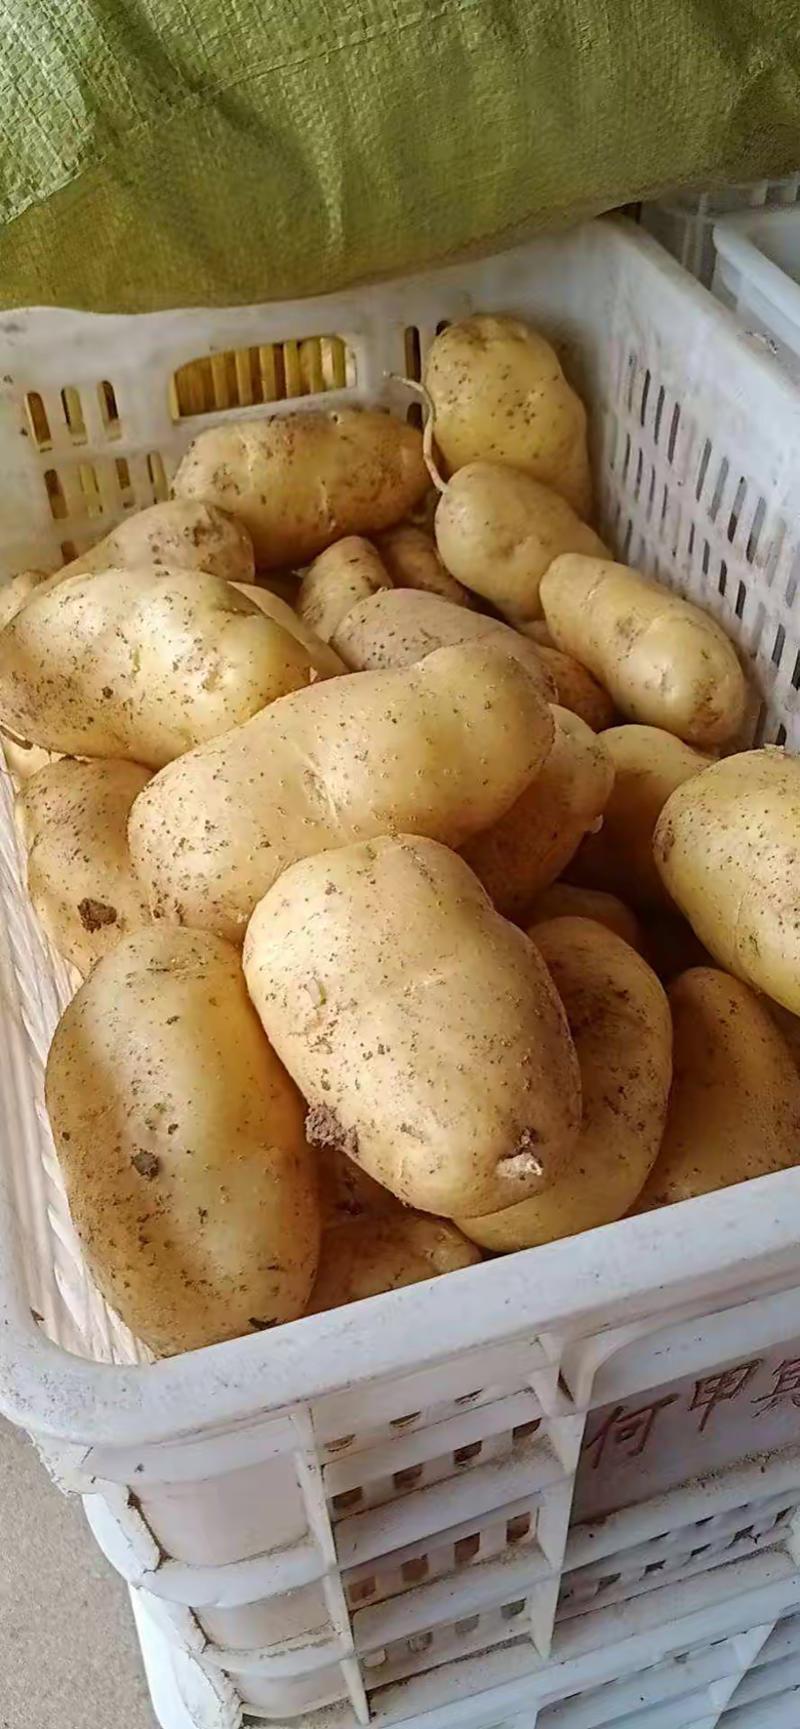 【希森6号土豆】实力供货品质保障对接全国客商